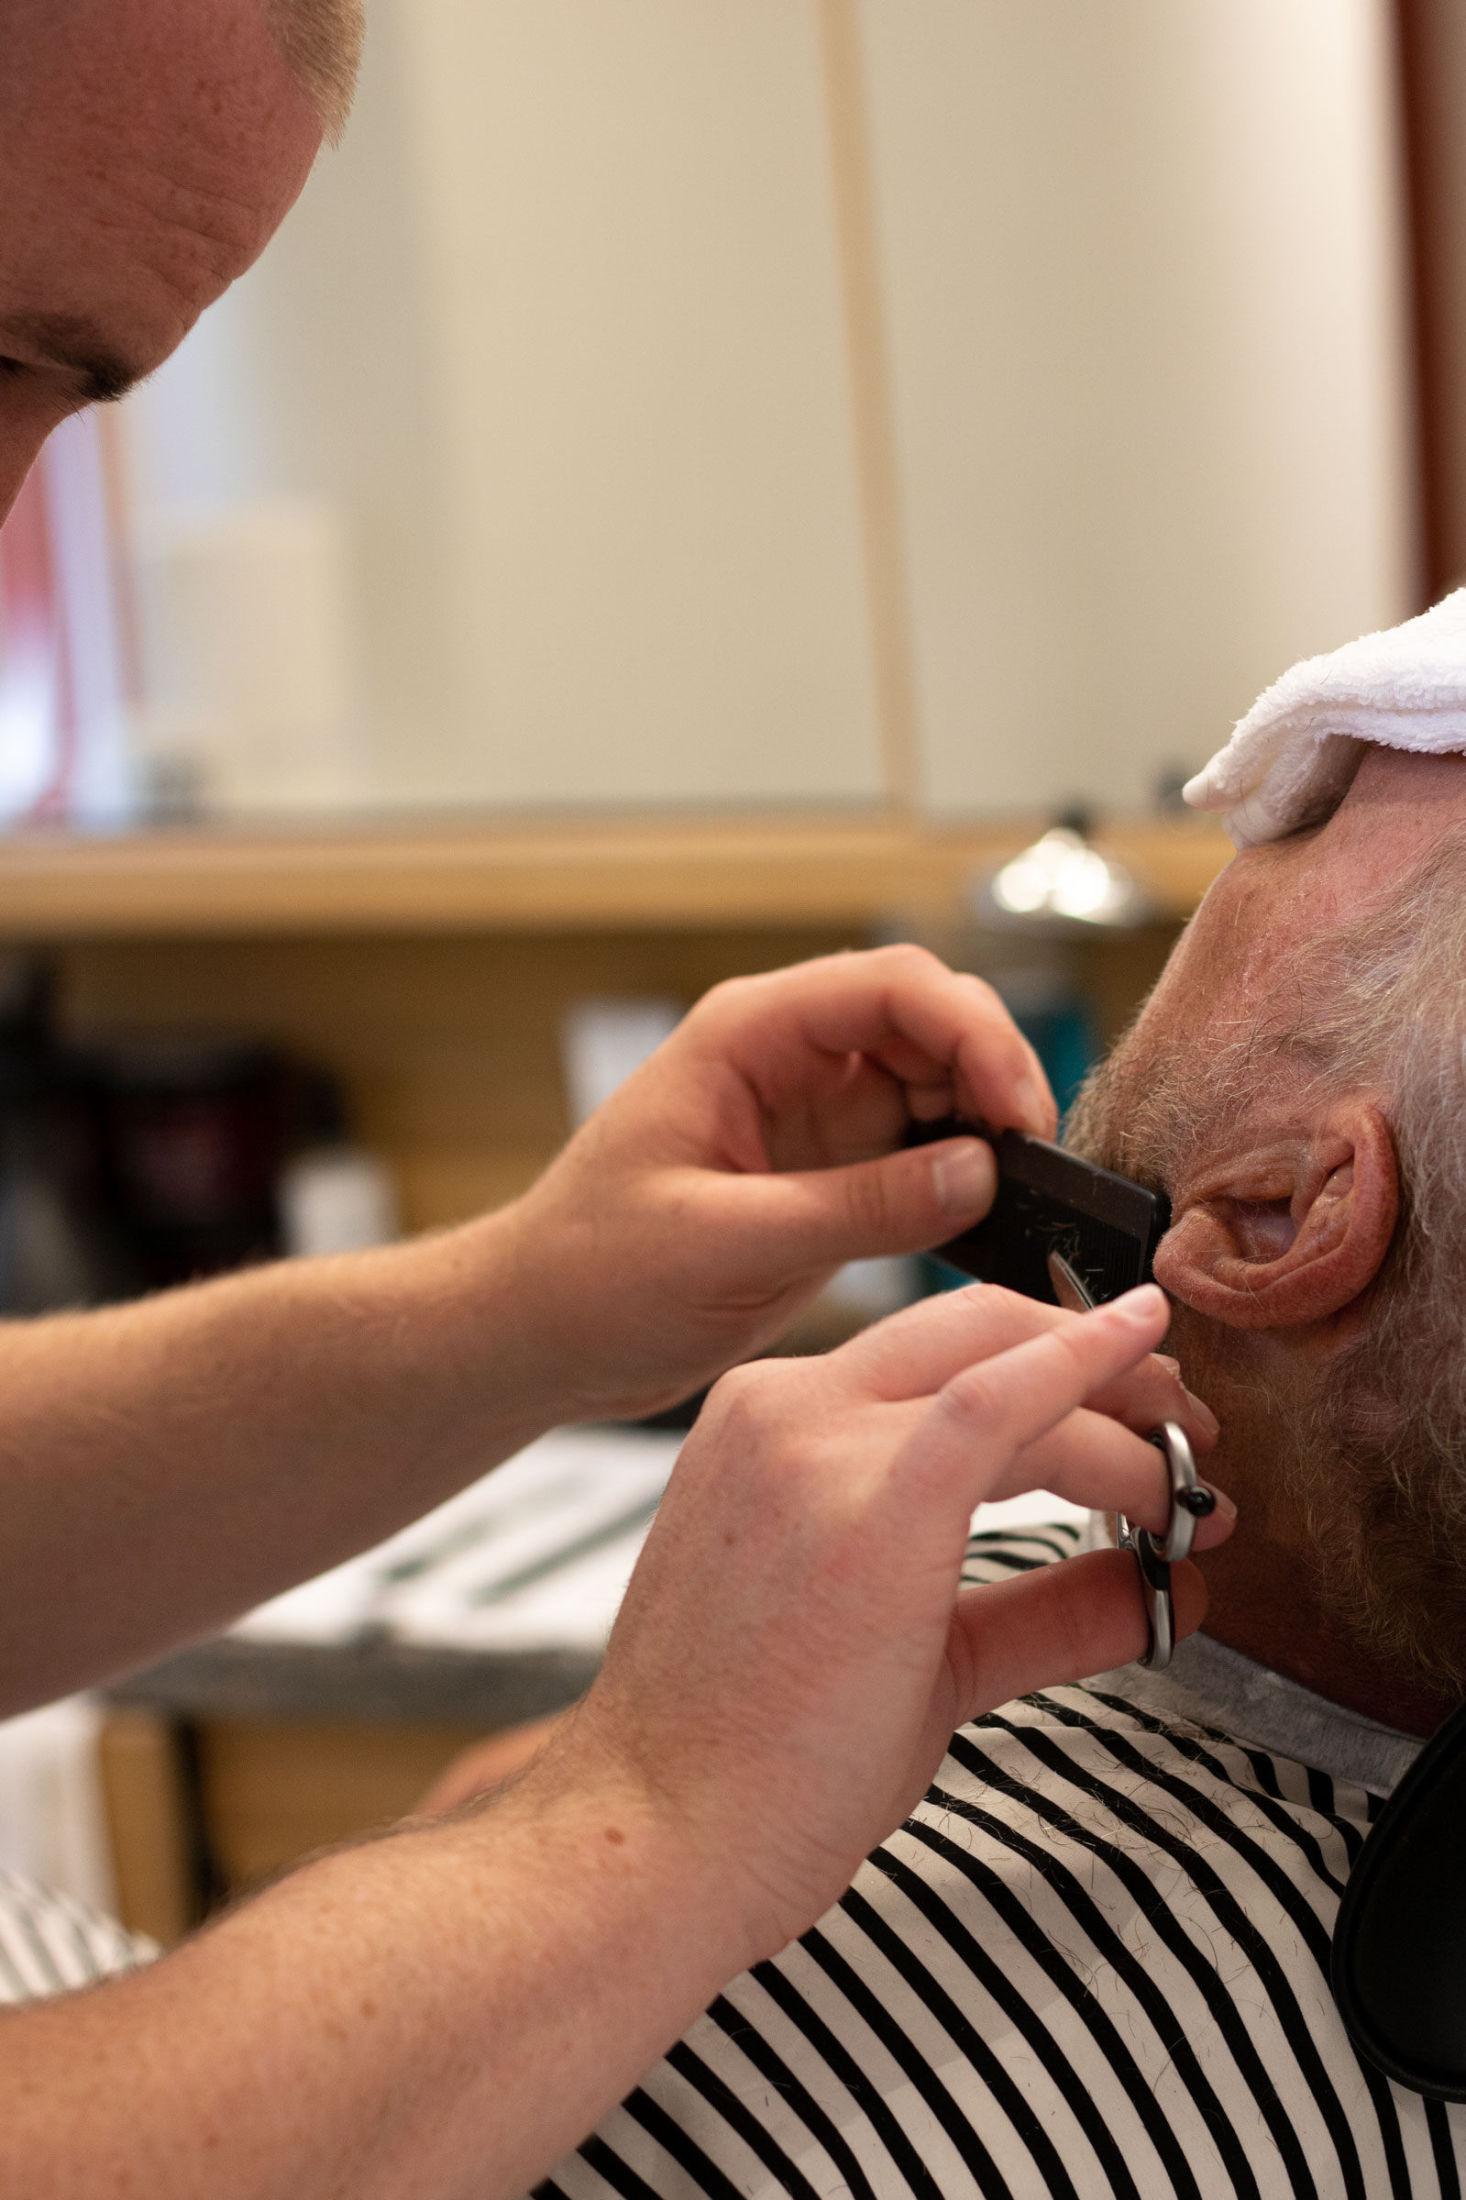 BRUK KAM: Ekspertene fra Pels Pels anbefaler å bruke en kam i barberingen – både til å gre ut skjegget, og som et hjelpemiddel for å få riktig lengde på rett sted. Foto: Privat / Pels Pels